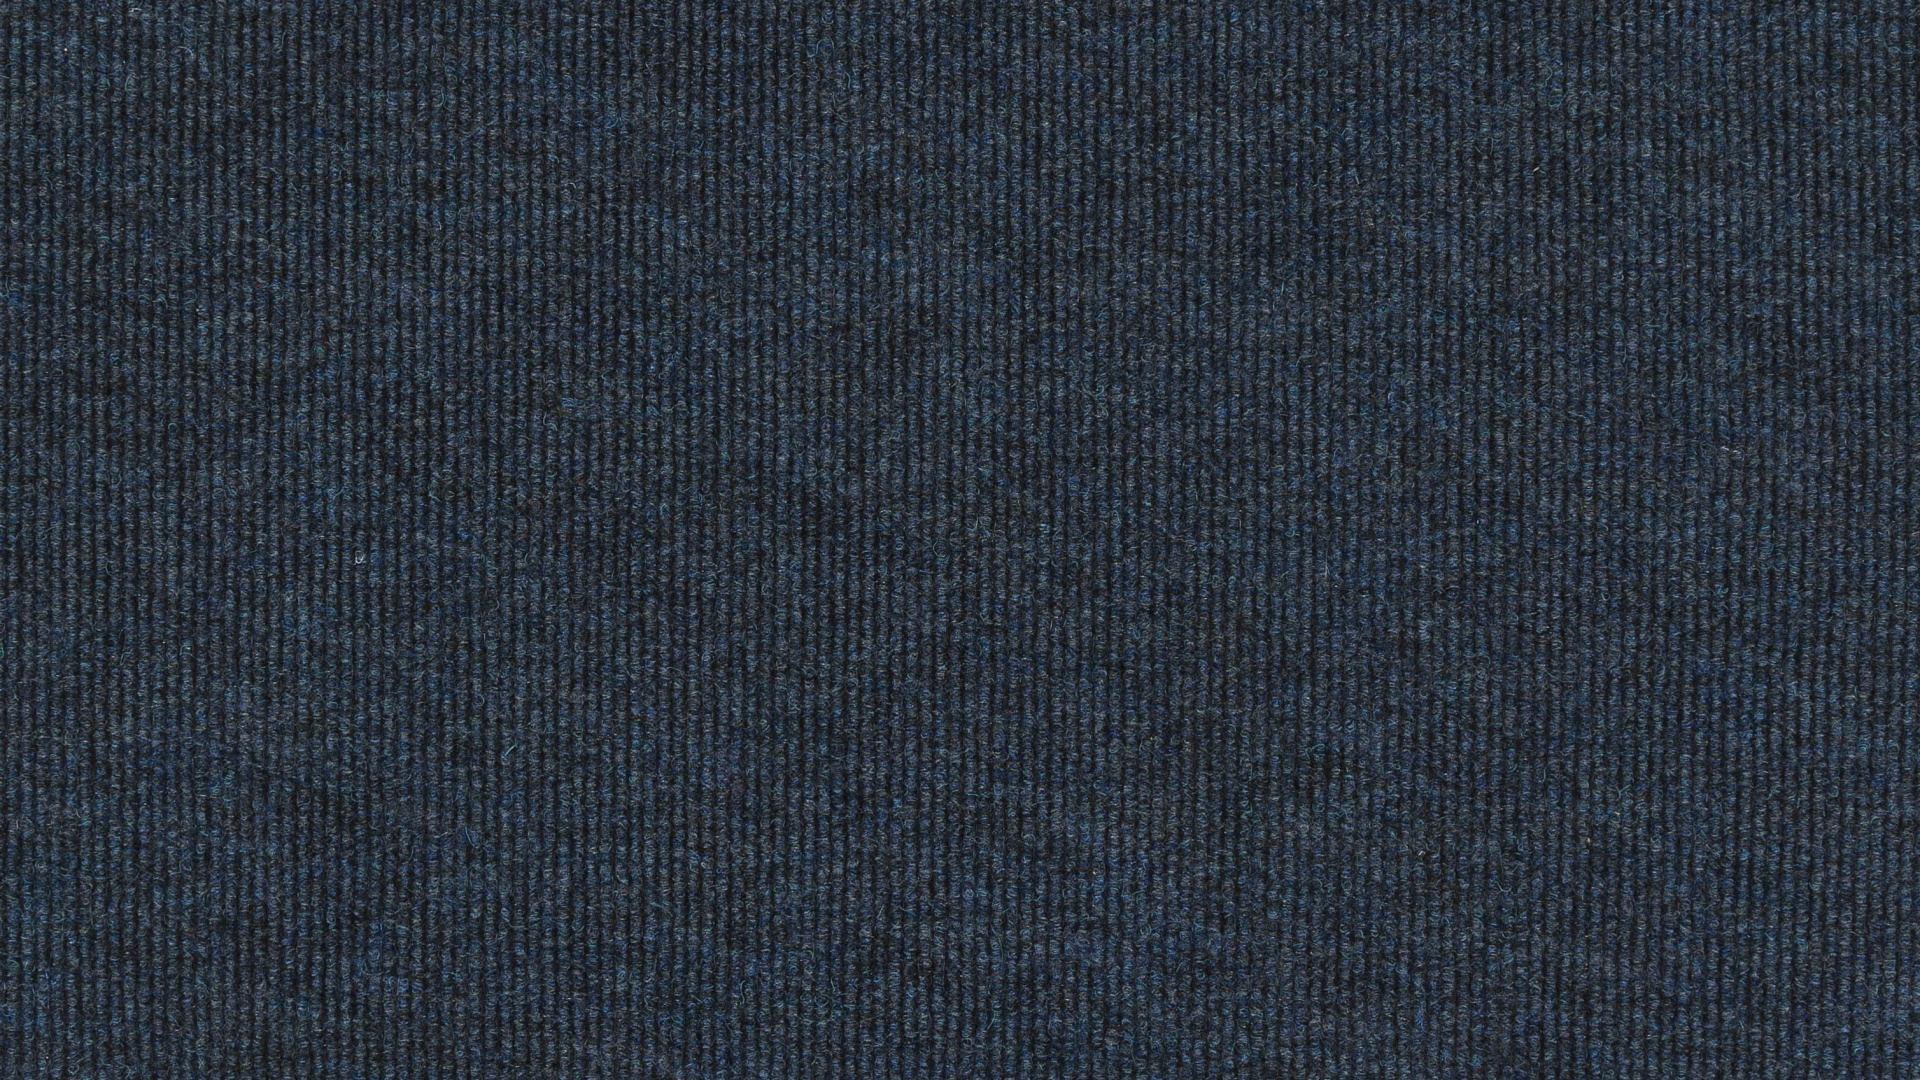 Textil Azul Con Fondo Negro. Wallpaper in 1920x1080 Resolution